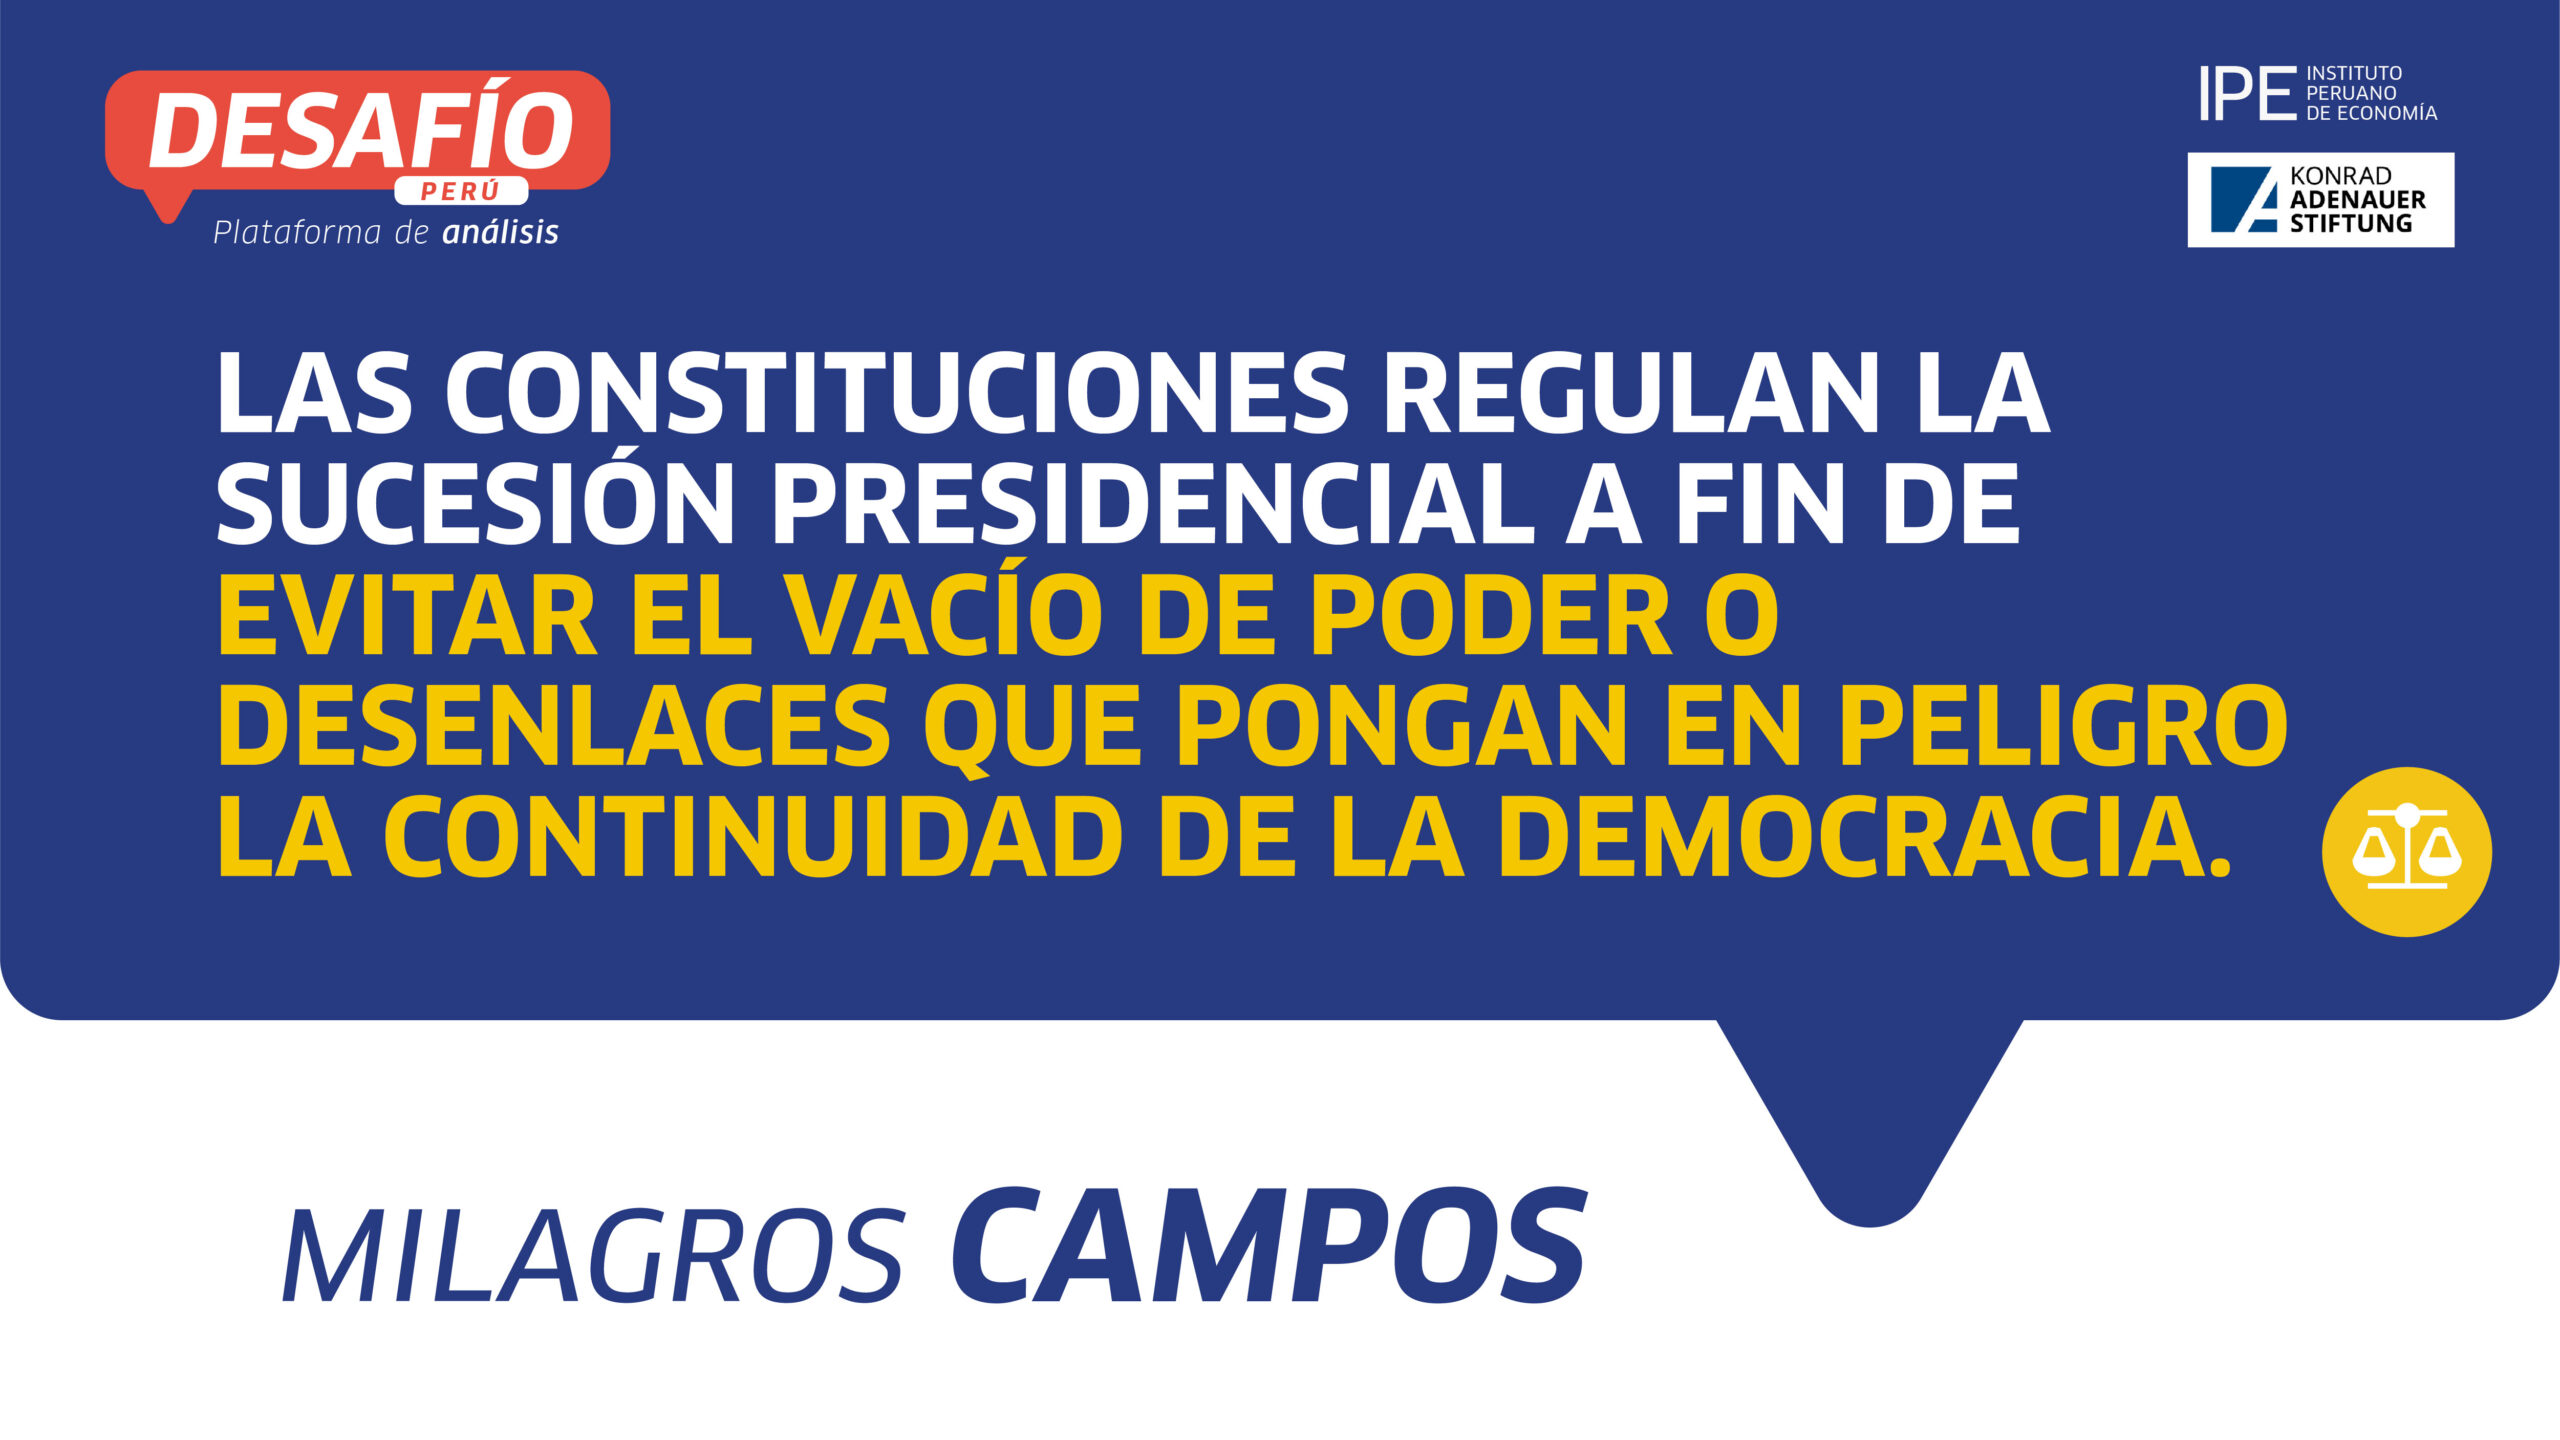 sucesión presidencial, Milagros Campos, instituciones, perú, democracia